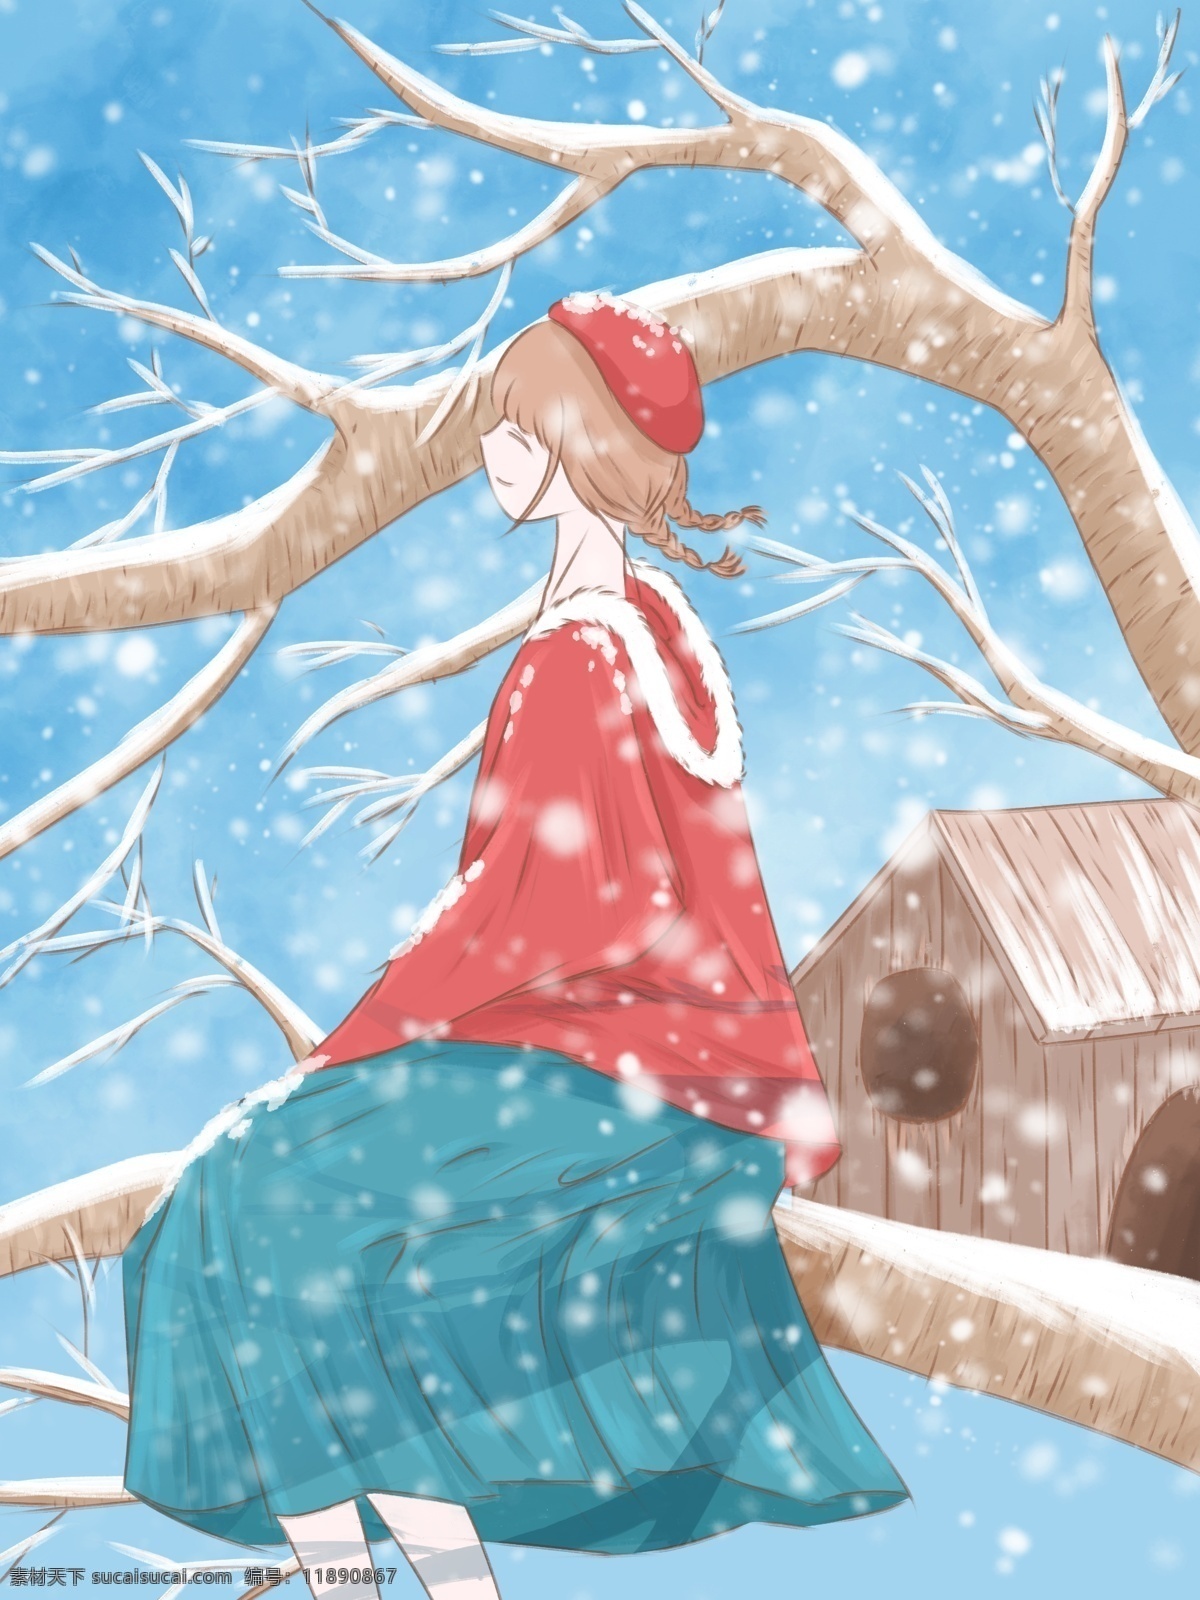 月 你好 清新 水彩 插画 坐在 树上 看 雪 女孩 冬天 雪景 树枝 壁纸 1月你好 1月 冬雪 树 鸟窝 木屋 背景